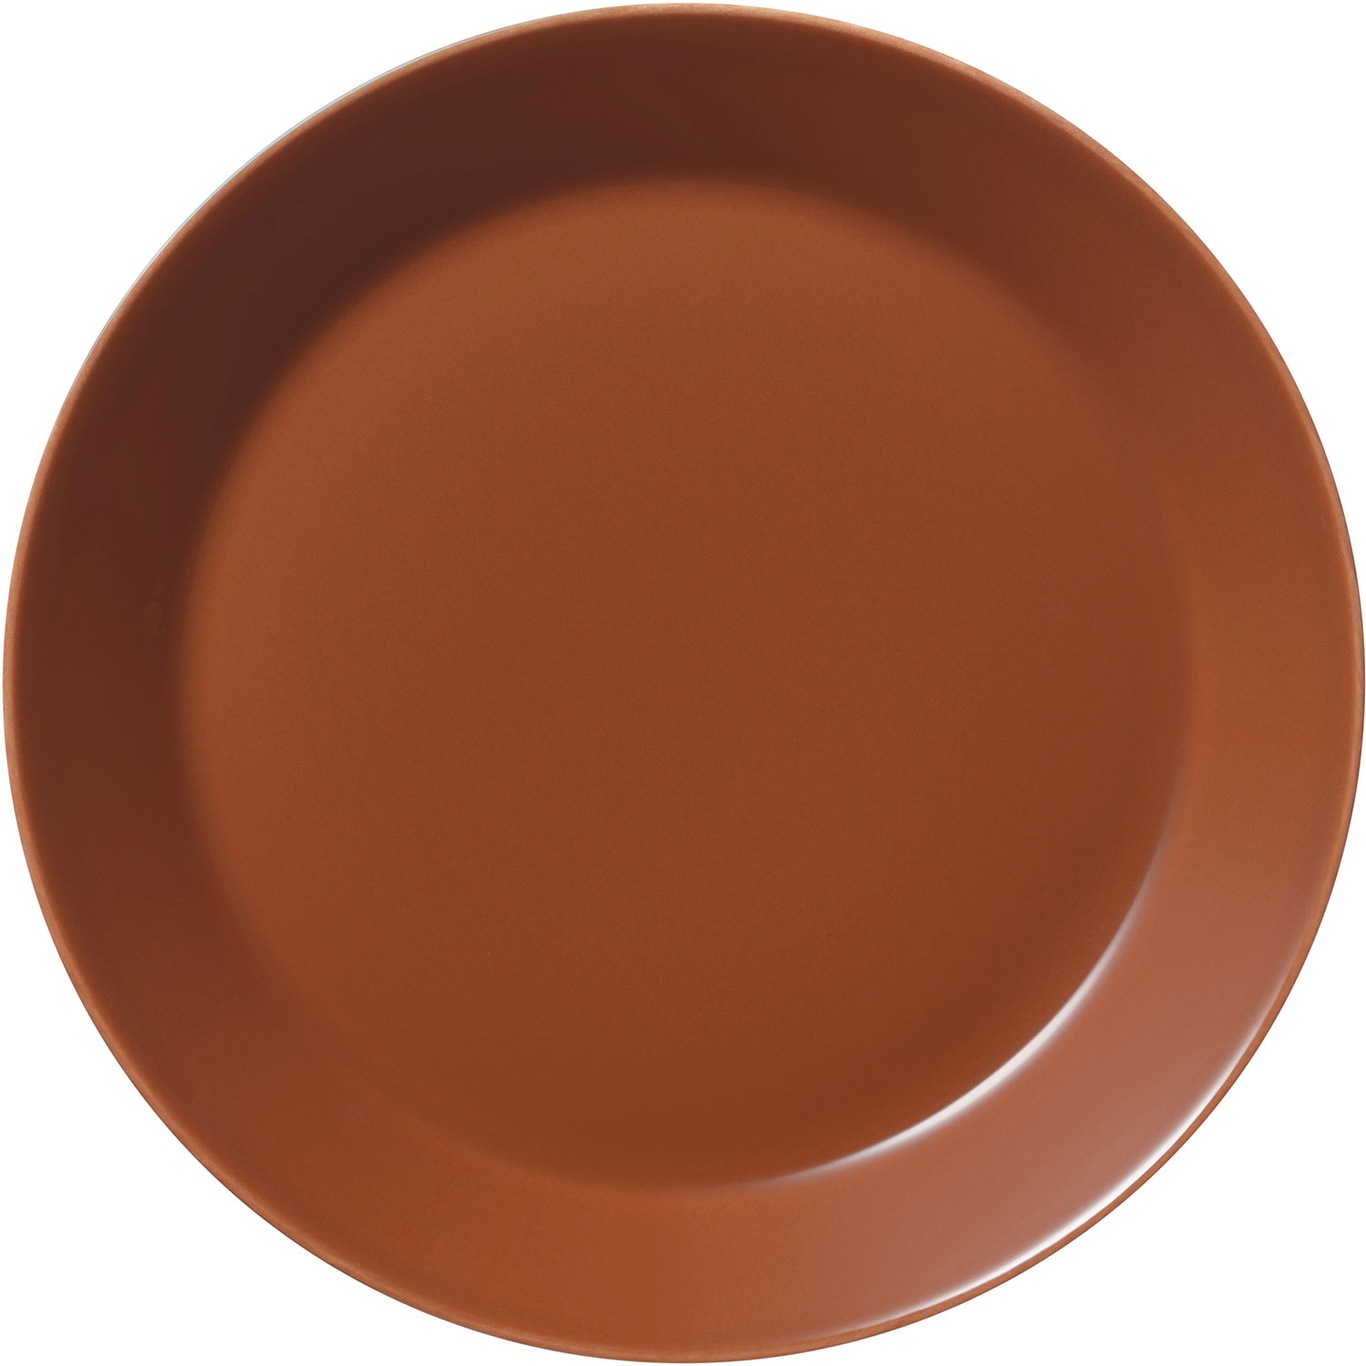 Teema Plate 21 cm, Vintage Brown